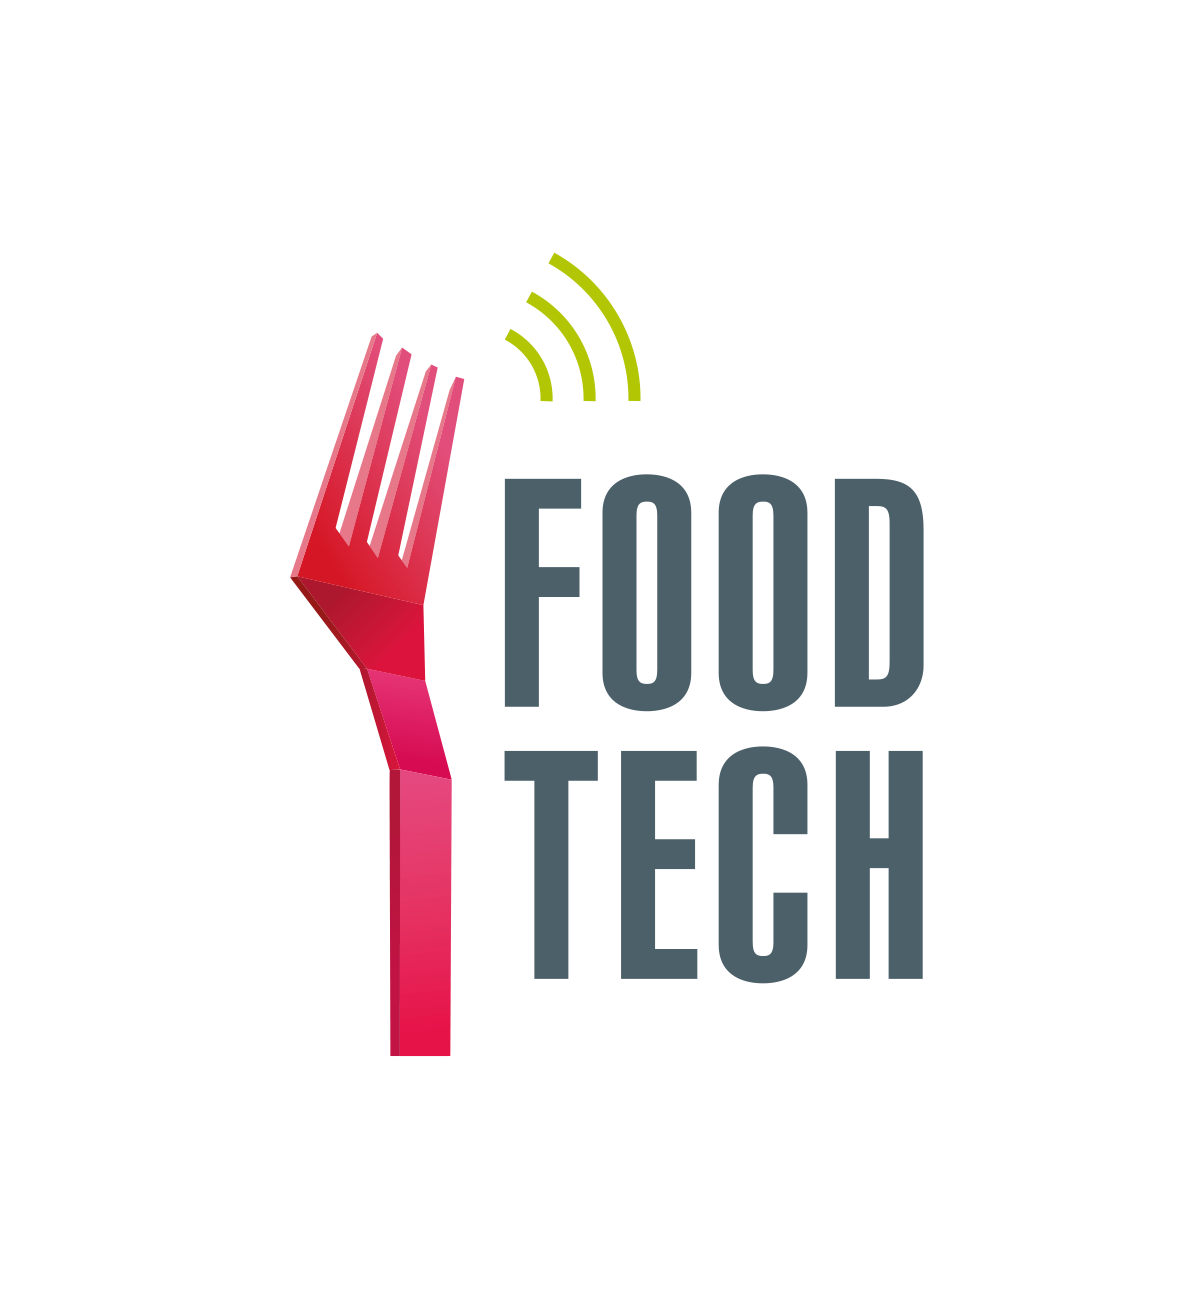 Retrouvez l'agenda FoodTech national